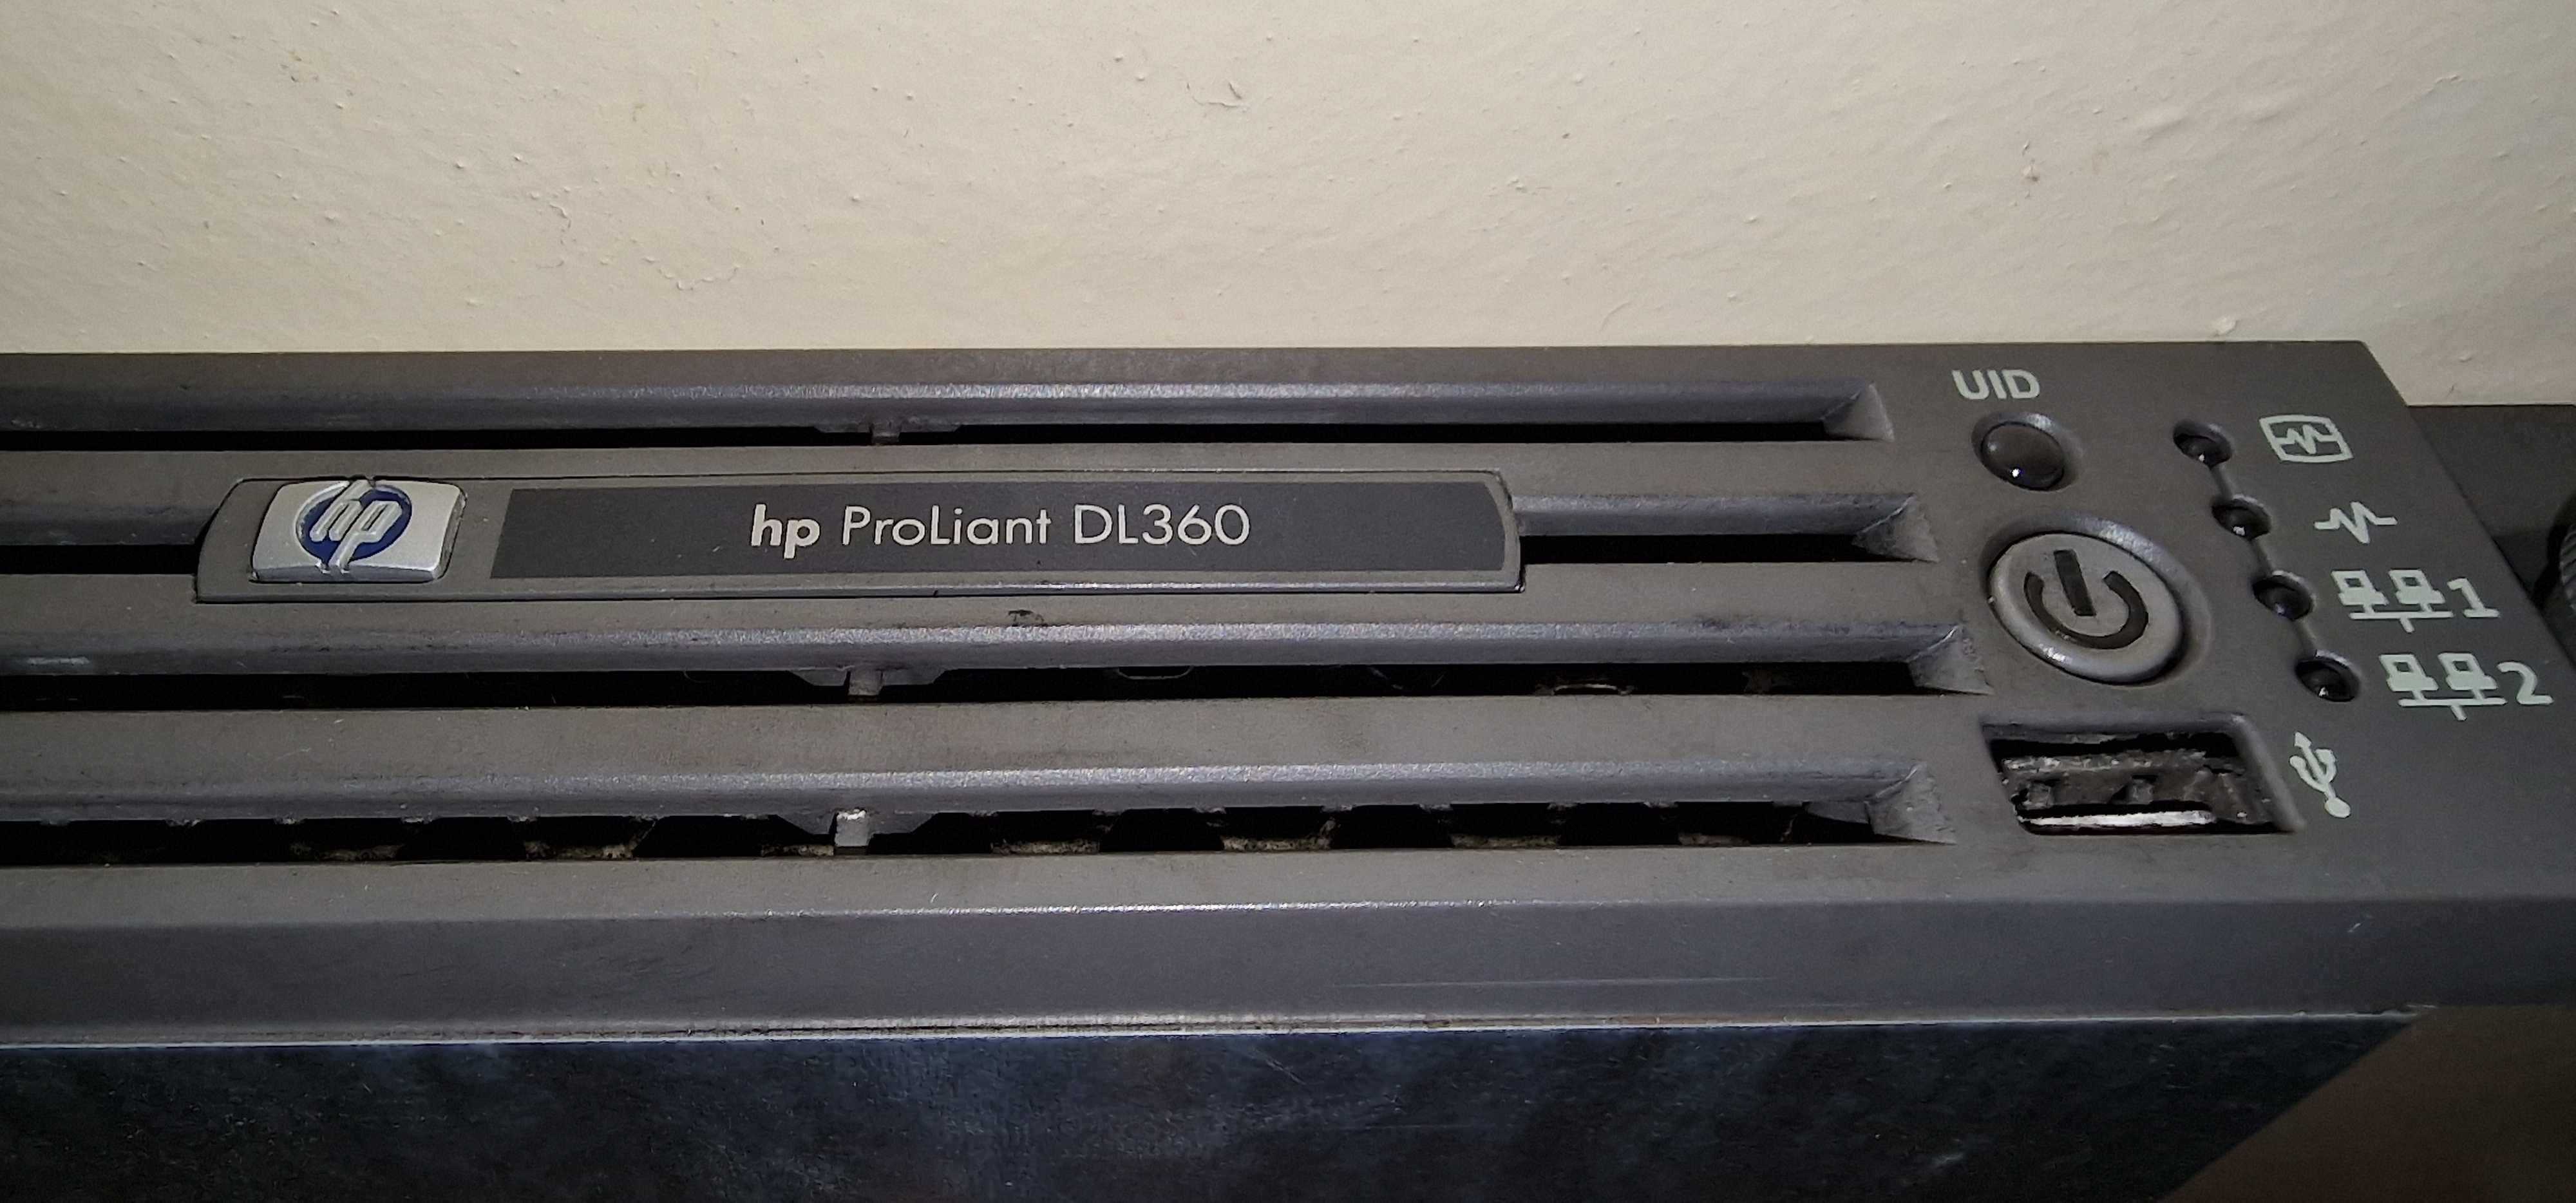 Б/у сервер HP ProLiant DL 360, G4, HSTNS - 2105, модульный, продам.